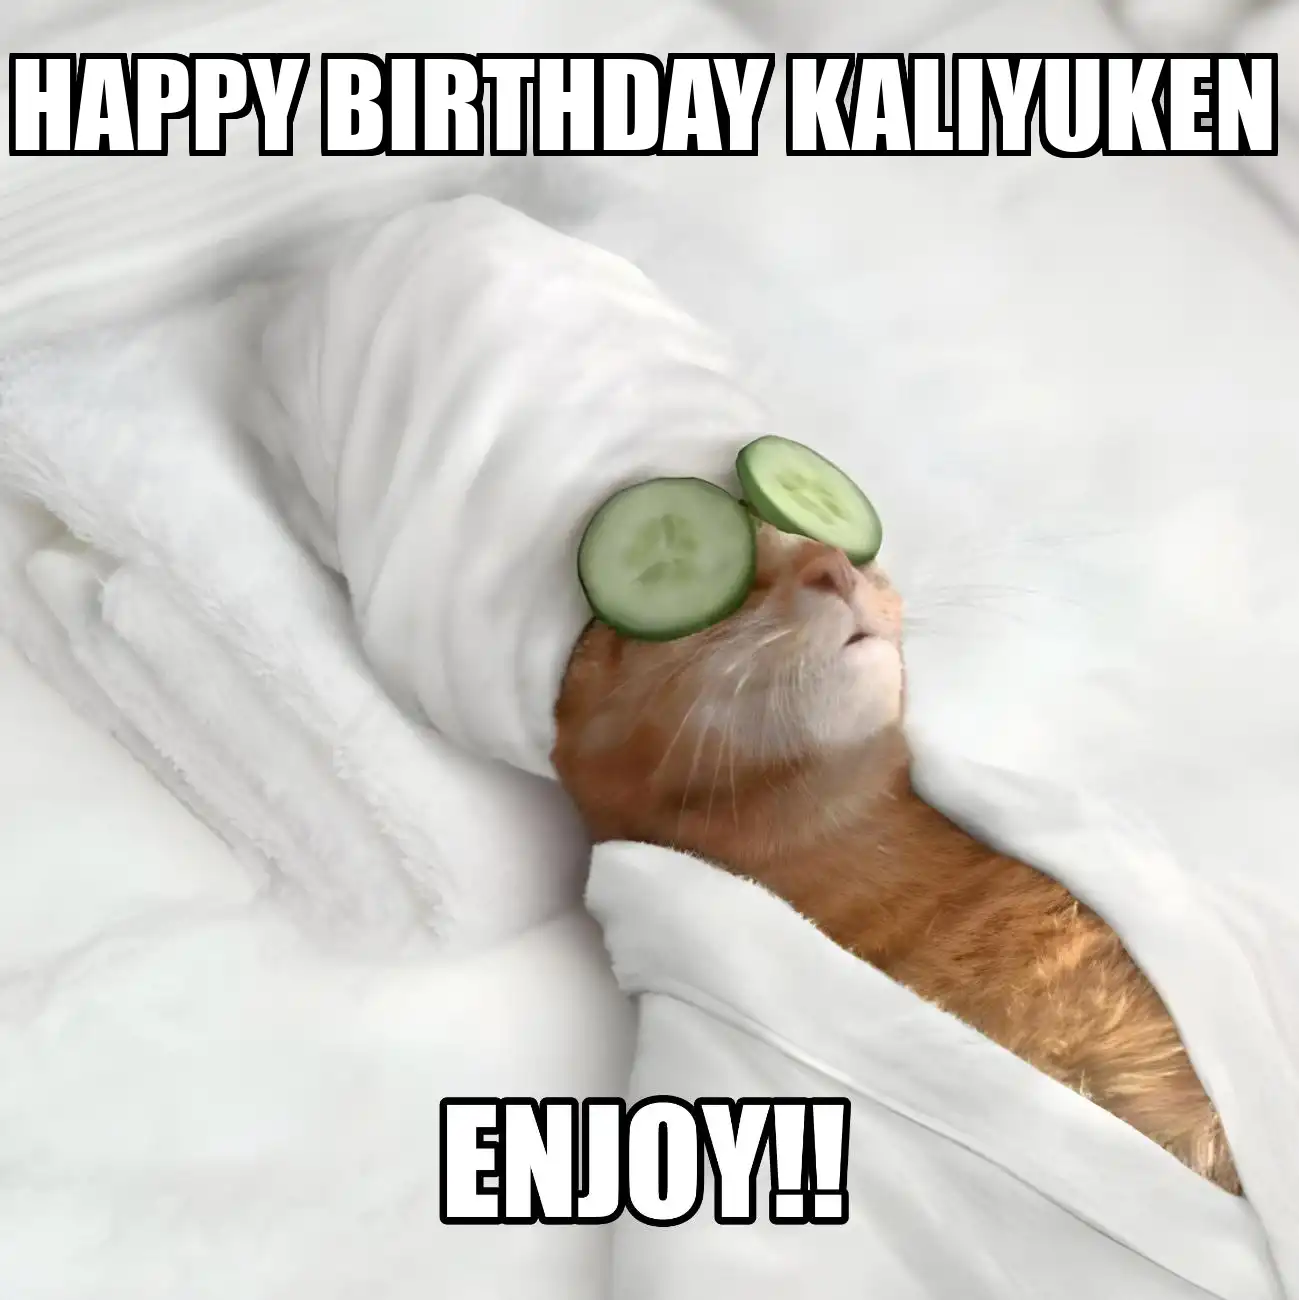 Happy Birthday Kaliyuken Enjoy Cat Meme